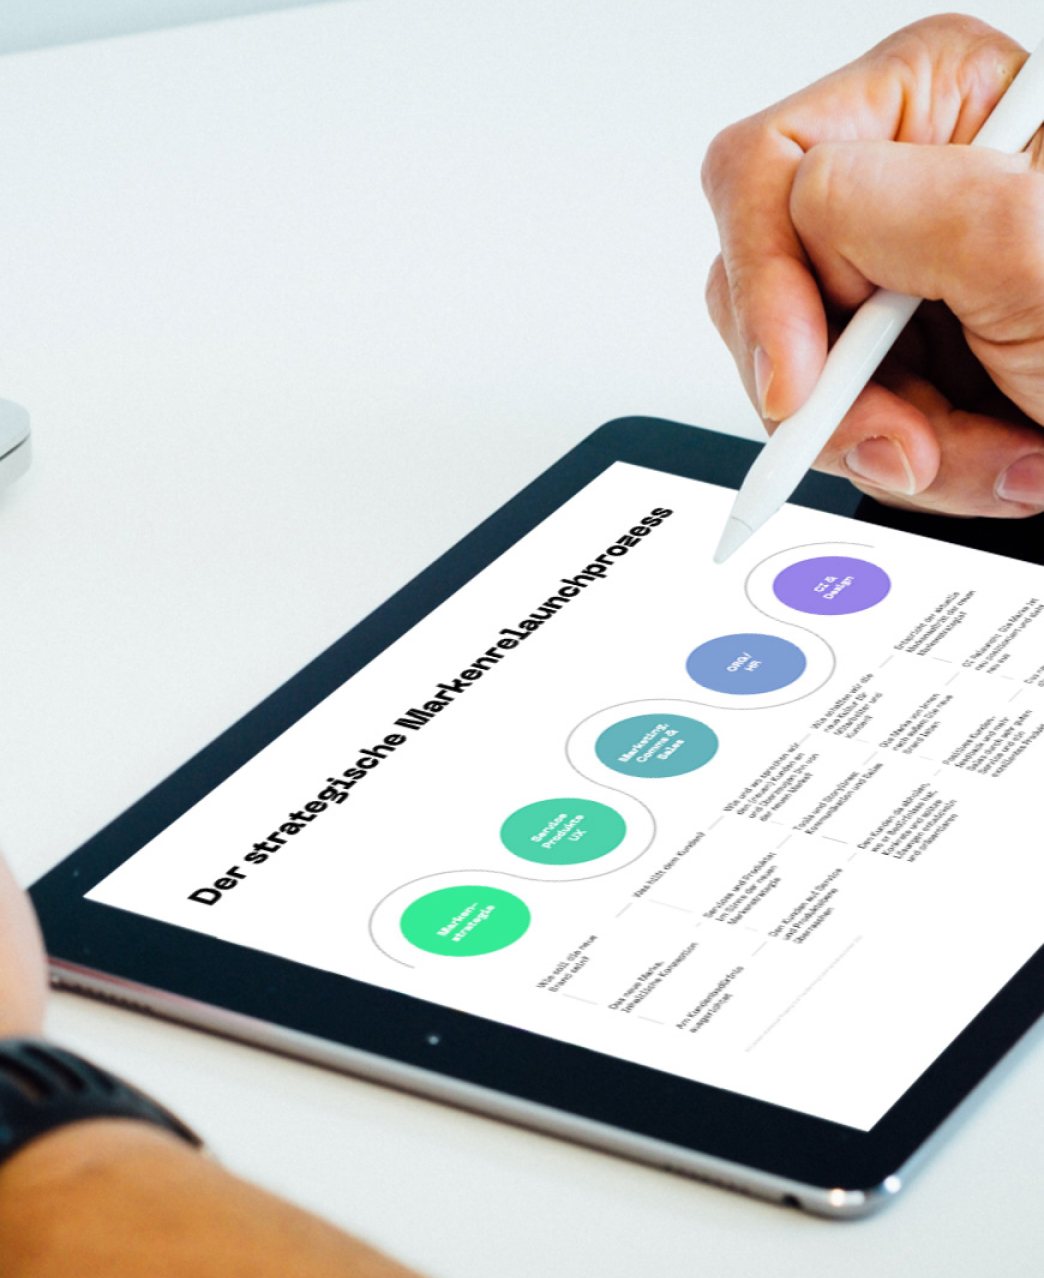 Der Strategische Markenprozess, dargestellt als Schaubild auf einem iPad. Der Prozess